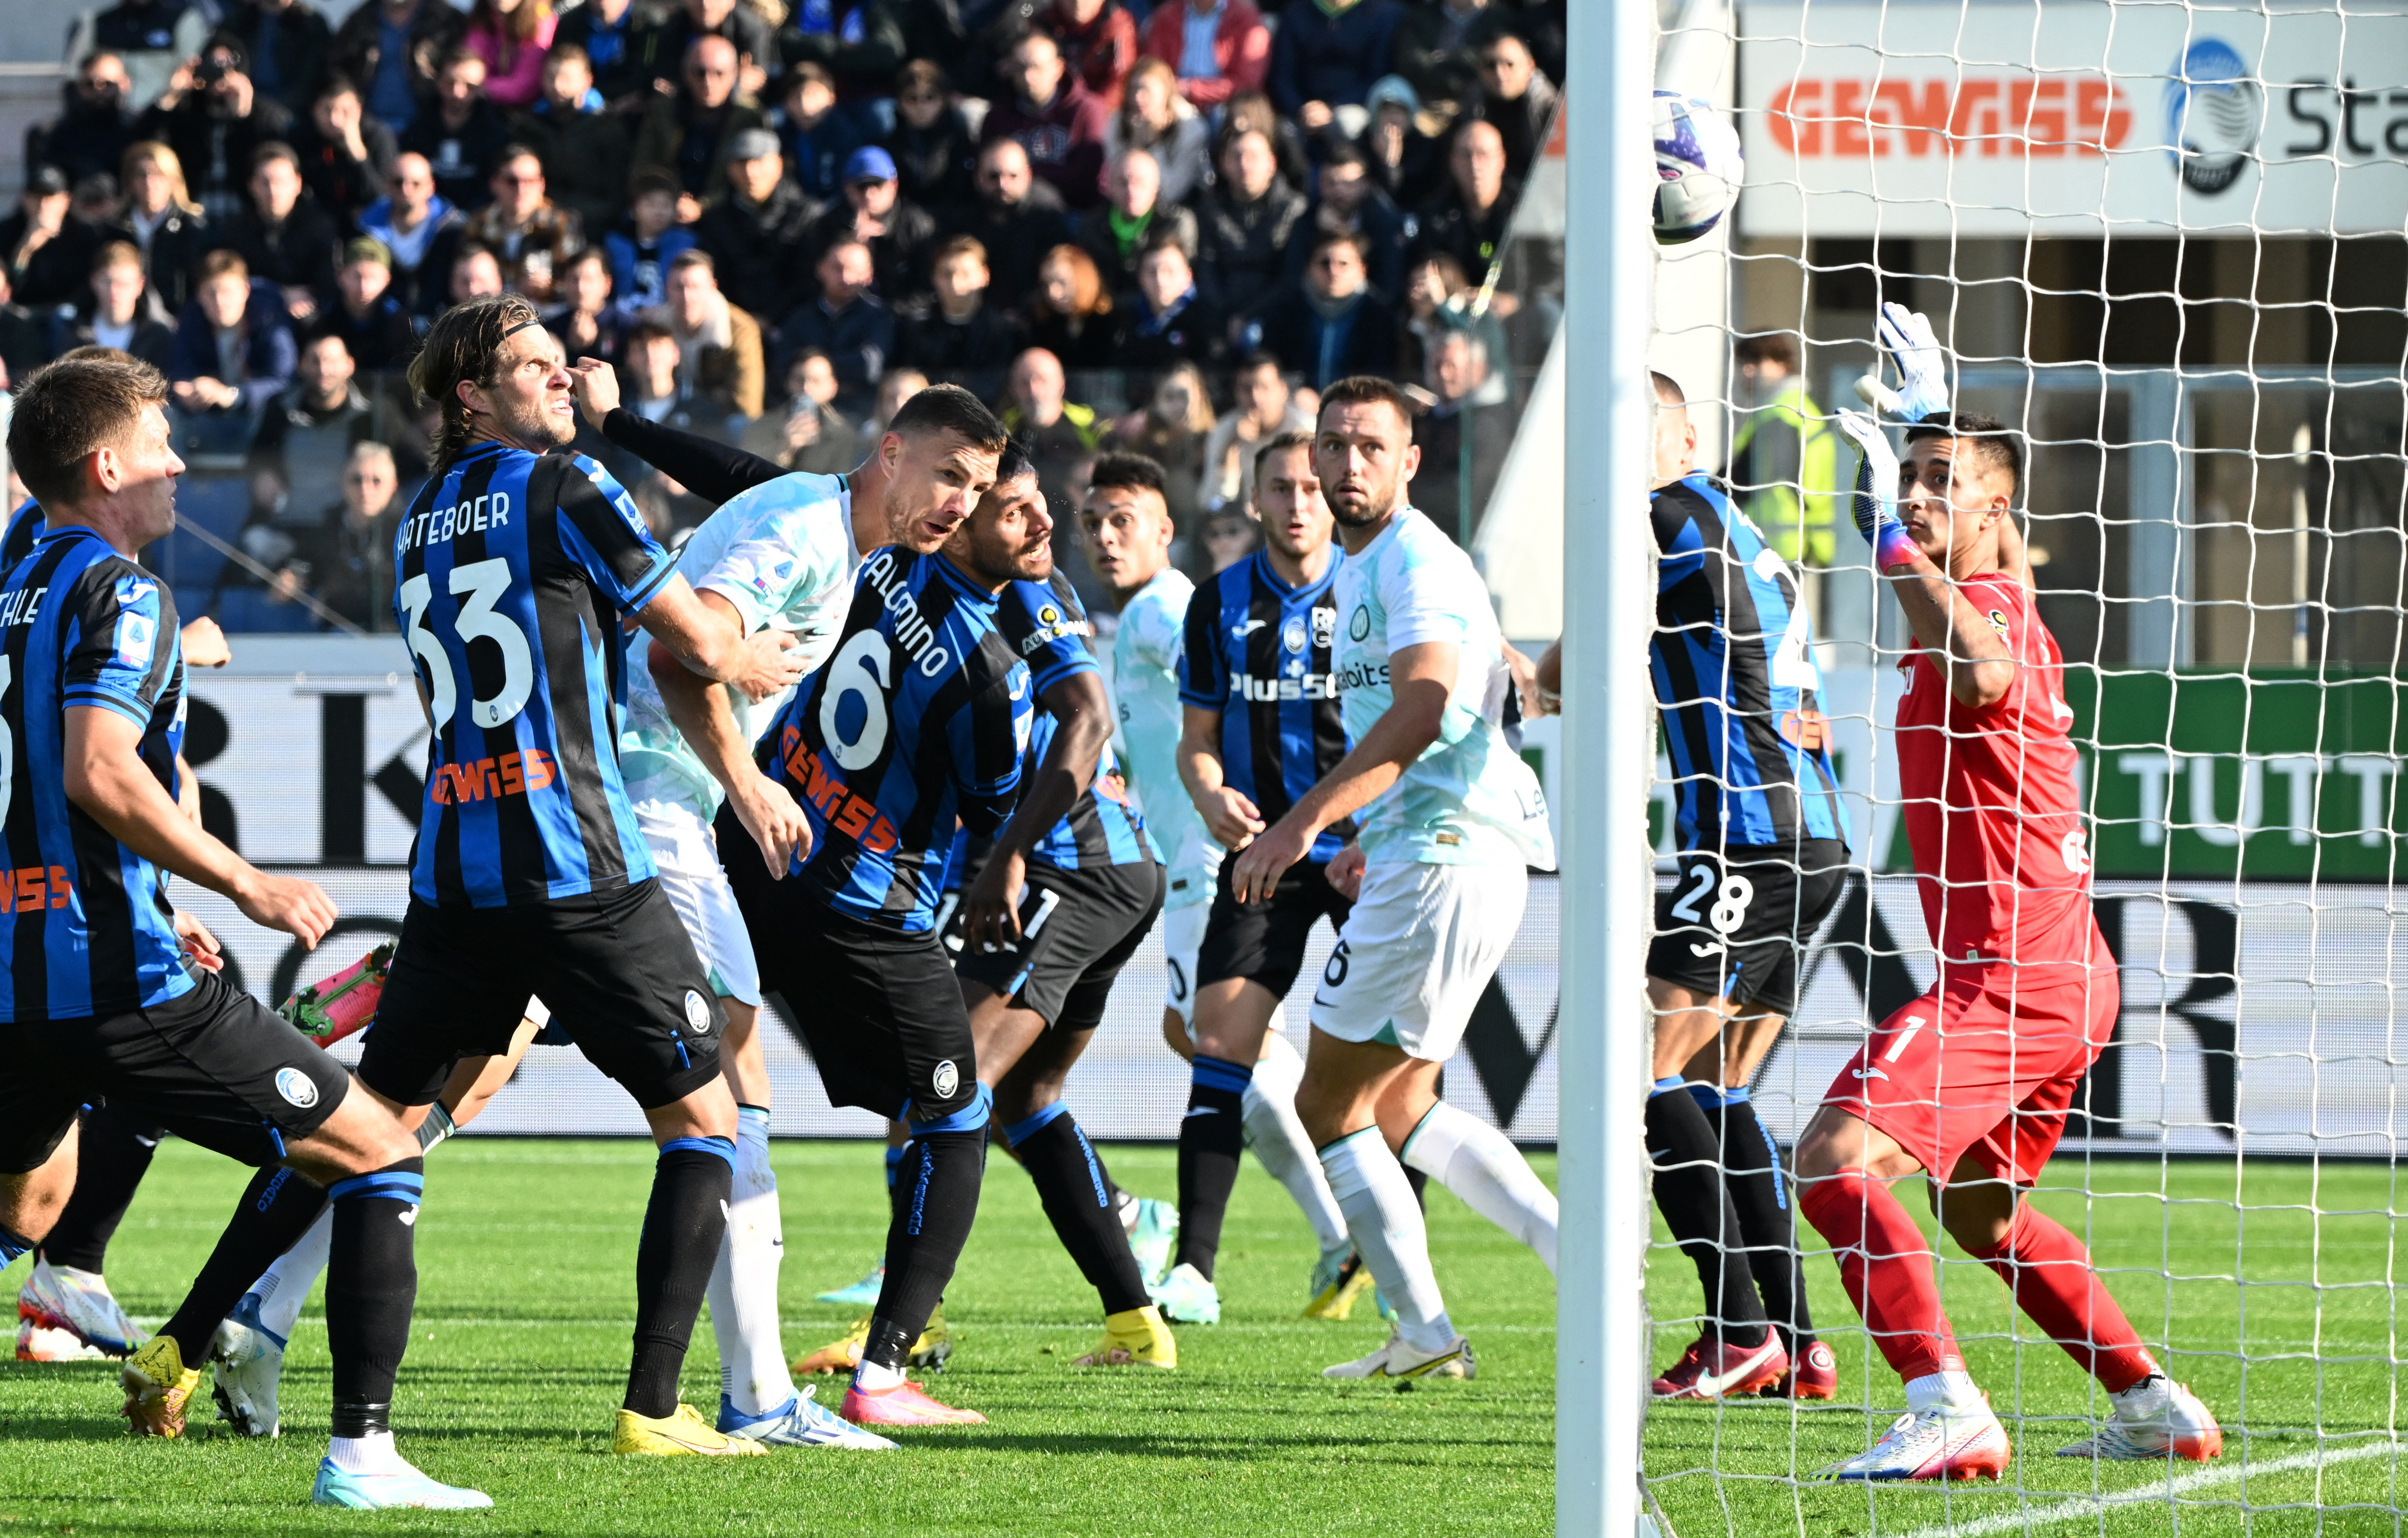 Inter vs. Atalanta EN VIVO: Muriel y Zapata quieren sorprender al “Nerazzurri” por Coppa Italia